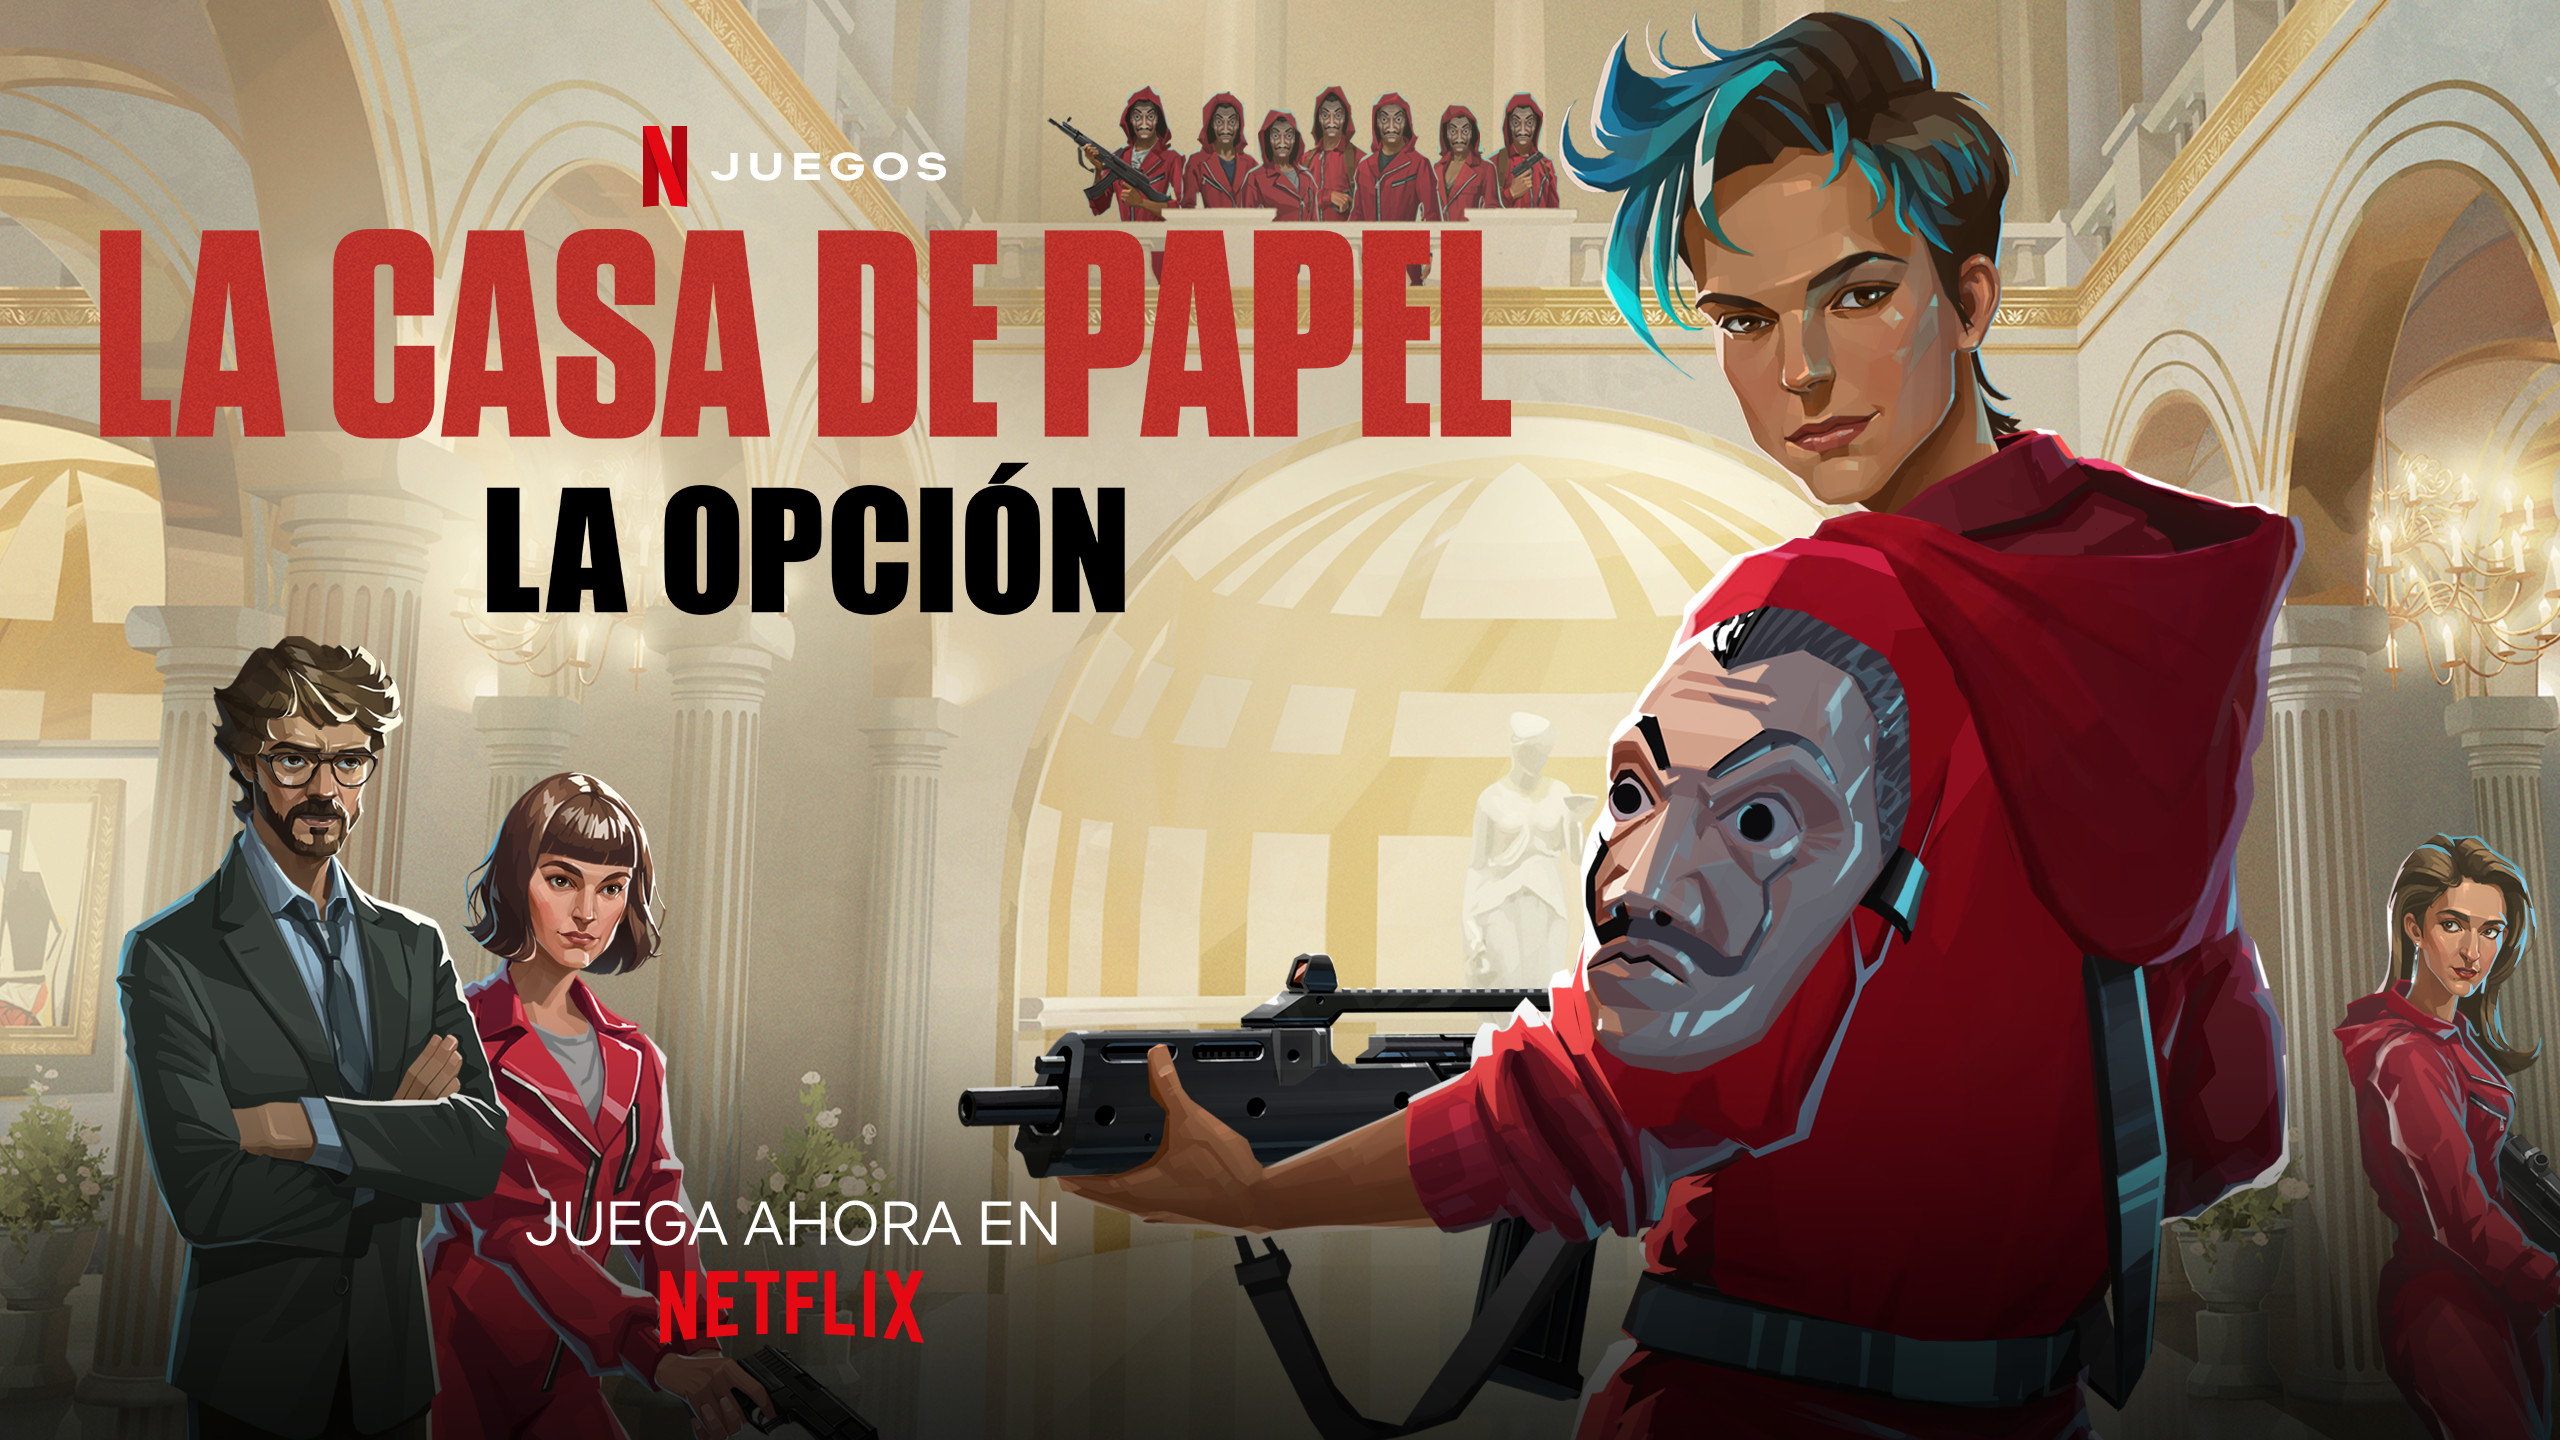 Disponible a Netflix un videojoc inspirat en 'La casa de papel' on surt Barcelona, però no en català